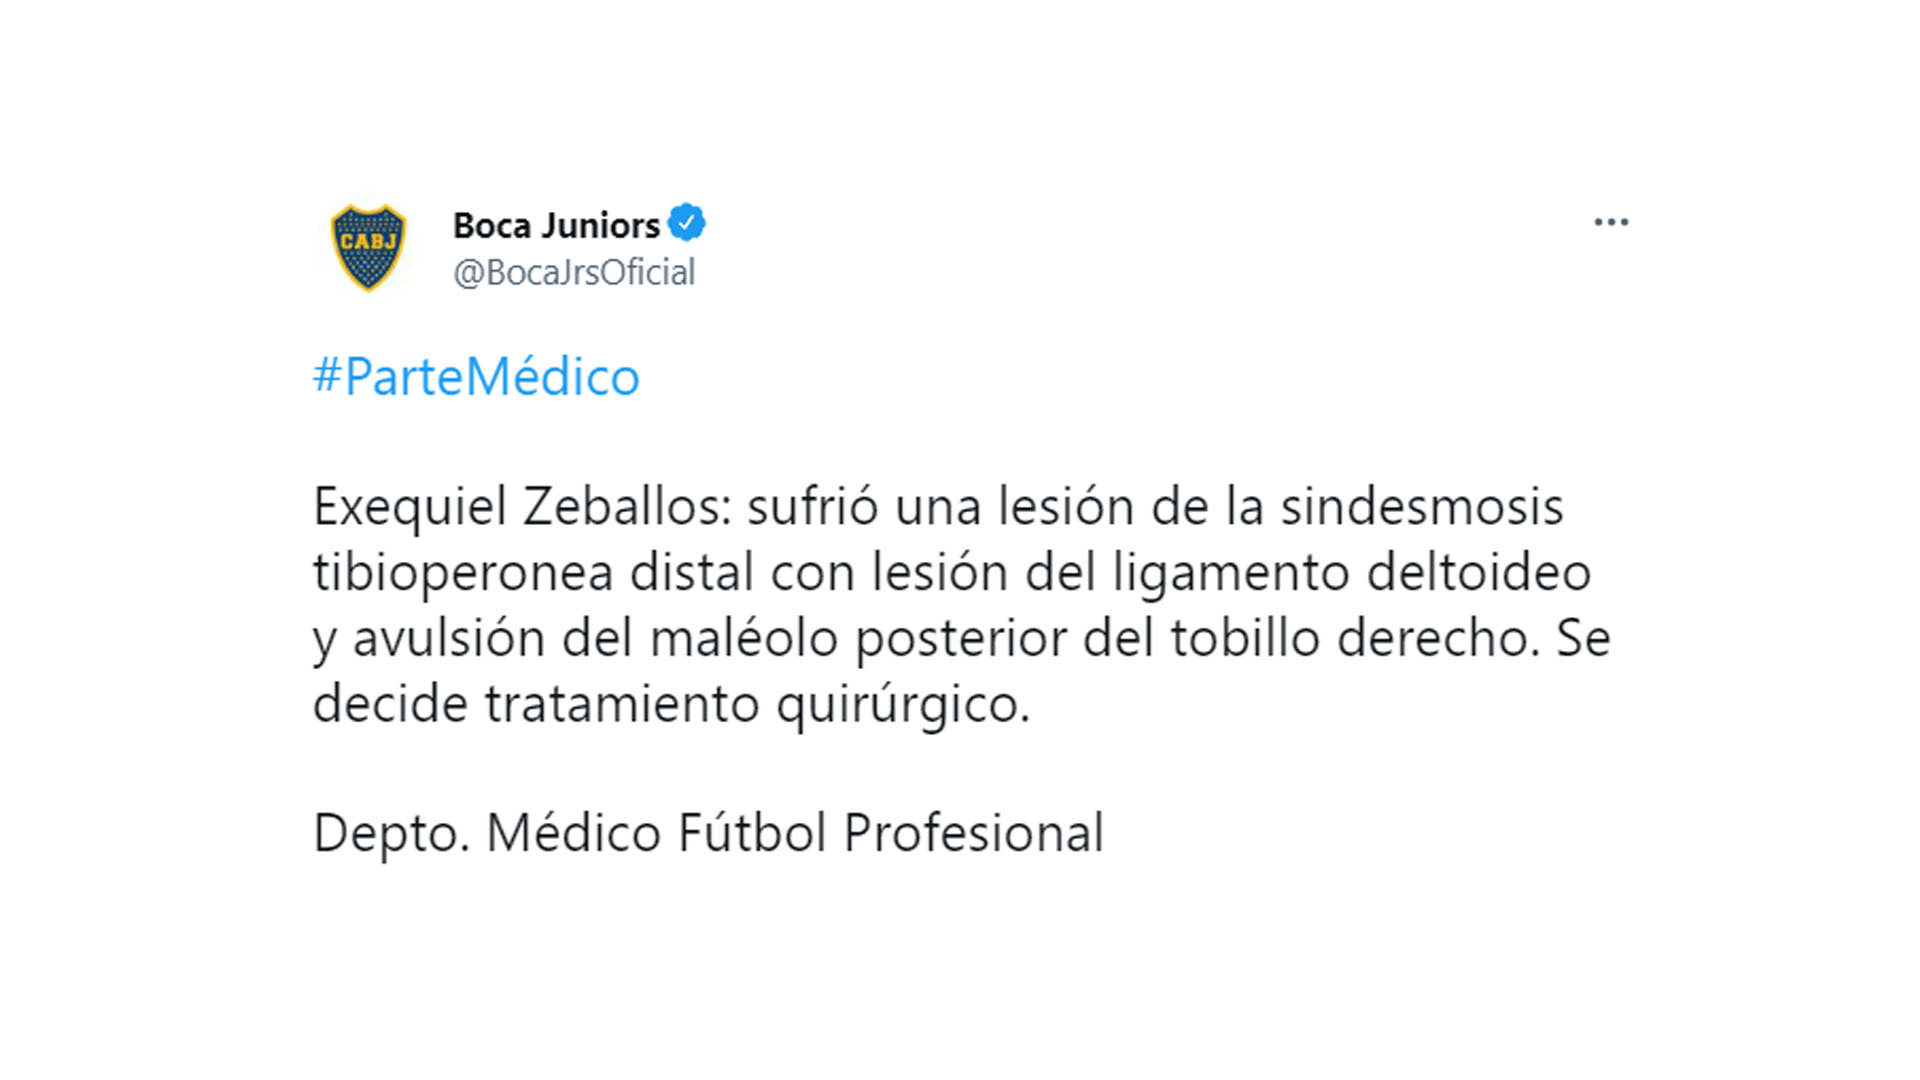 El parte médico oficial de Boca Juniors